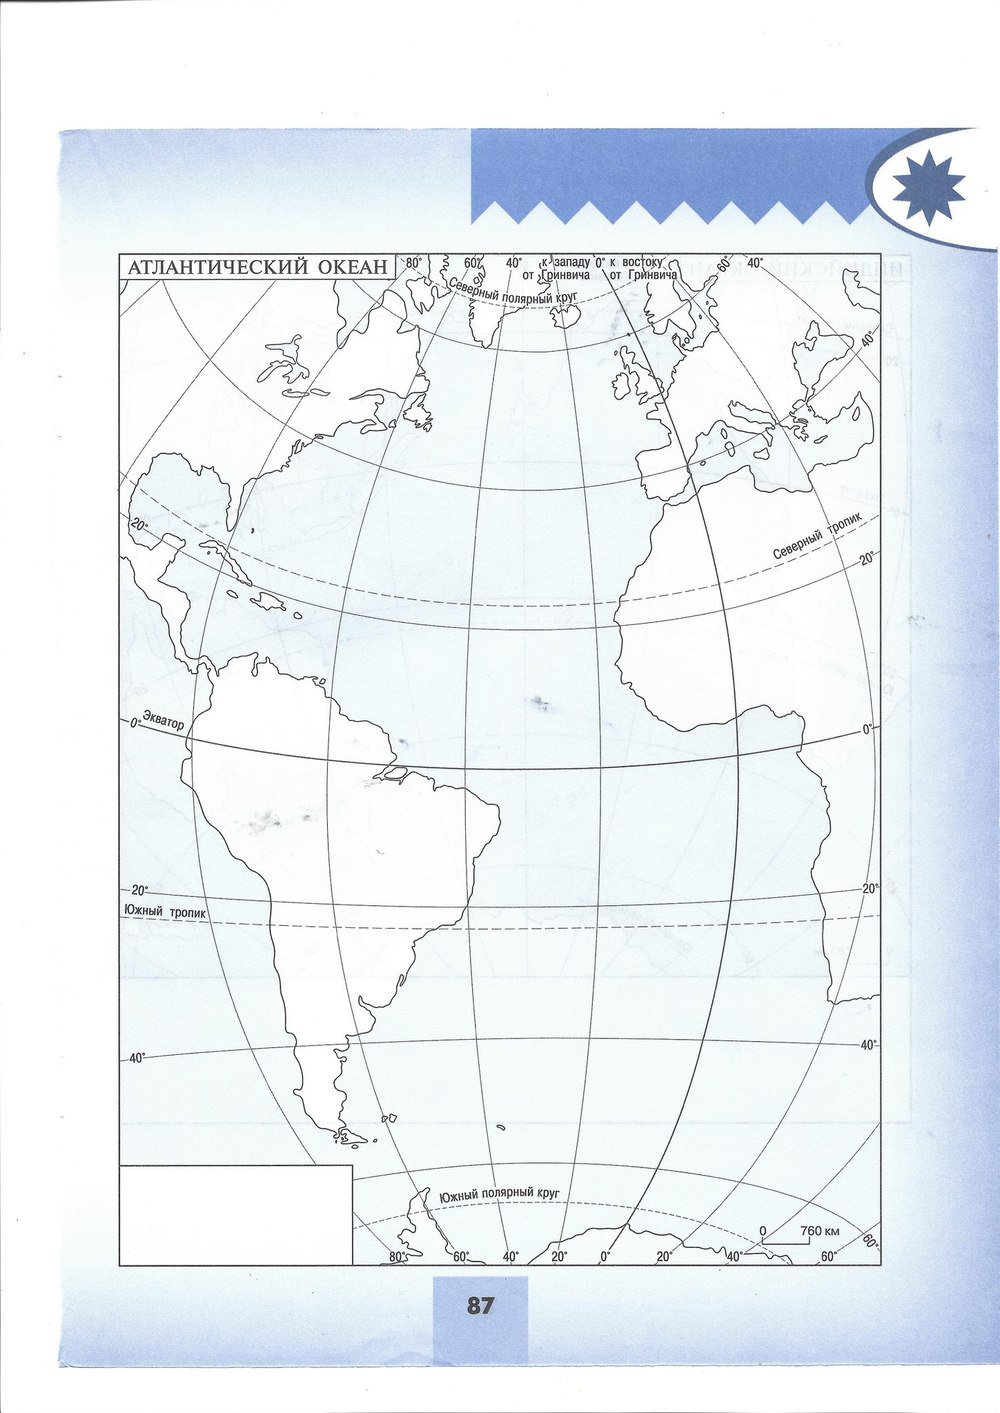 Контурная карта 7 класс печать. Контурная карта по географии 7 класс Атлантический океан. Контур карта география 7 класс Атлантический океан. Атлантический океан 7 класс география контурная карта. Контурная карта Атлантического океана.